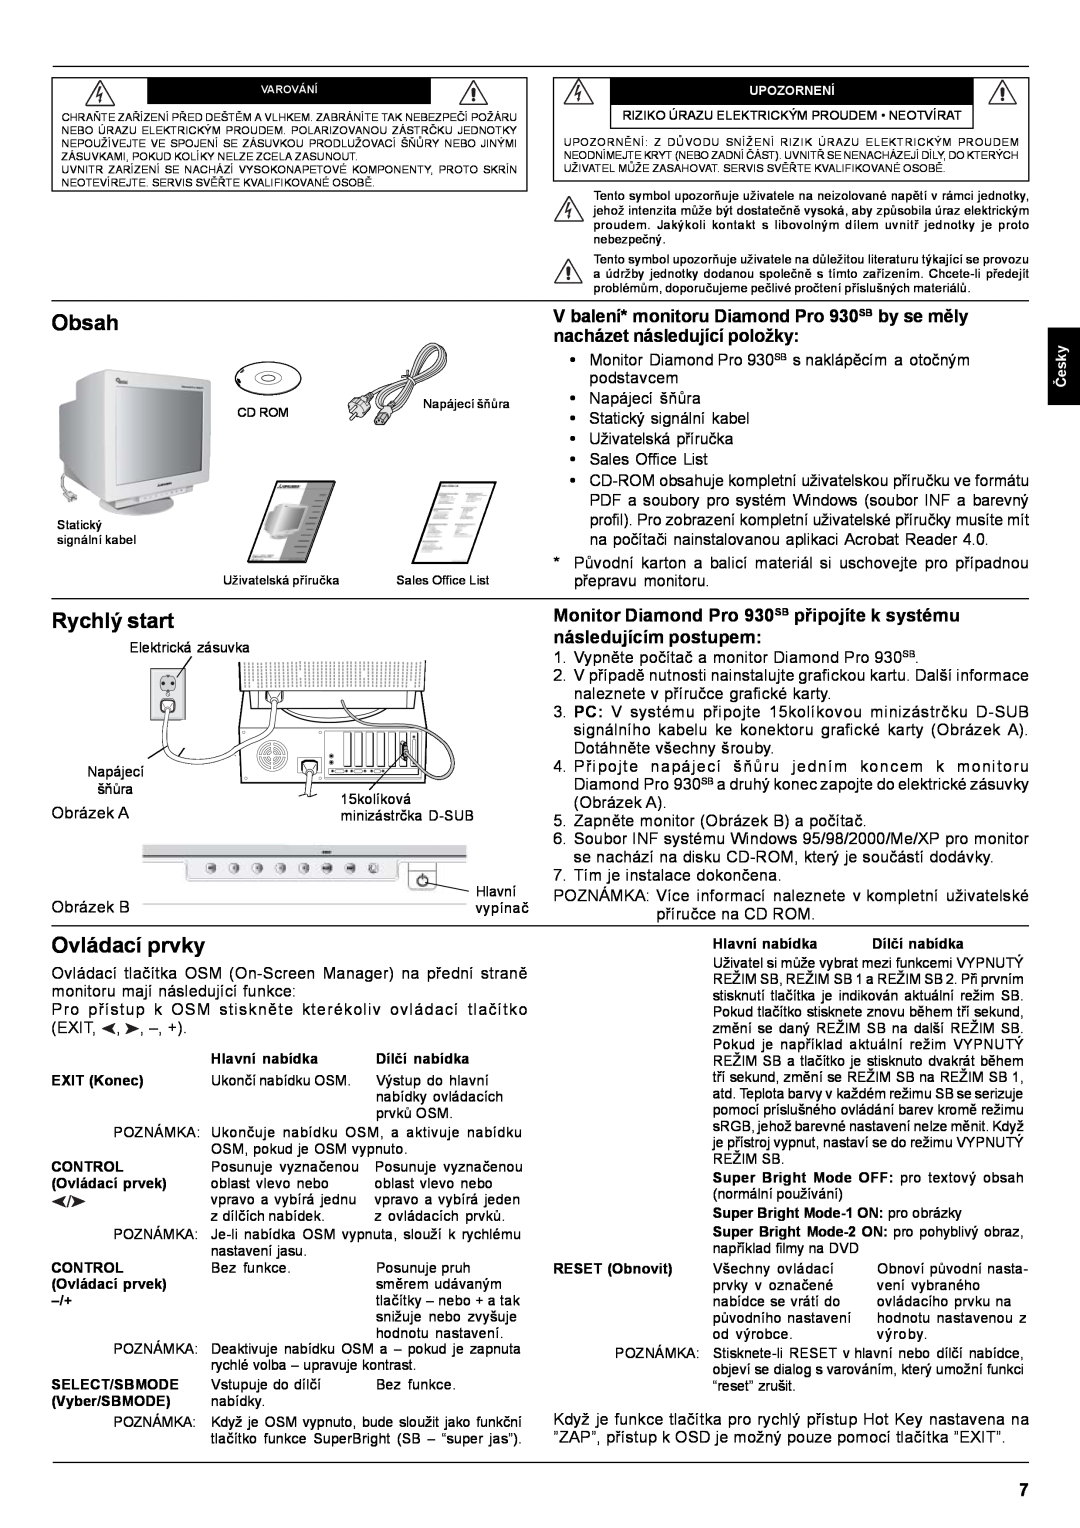 Mitsubishi Electronics Pro 930SB user manual Obsah, Rychlý start, Ovládací prvky 